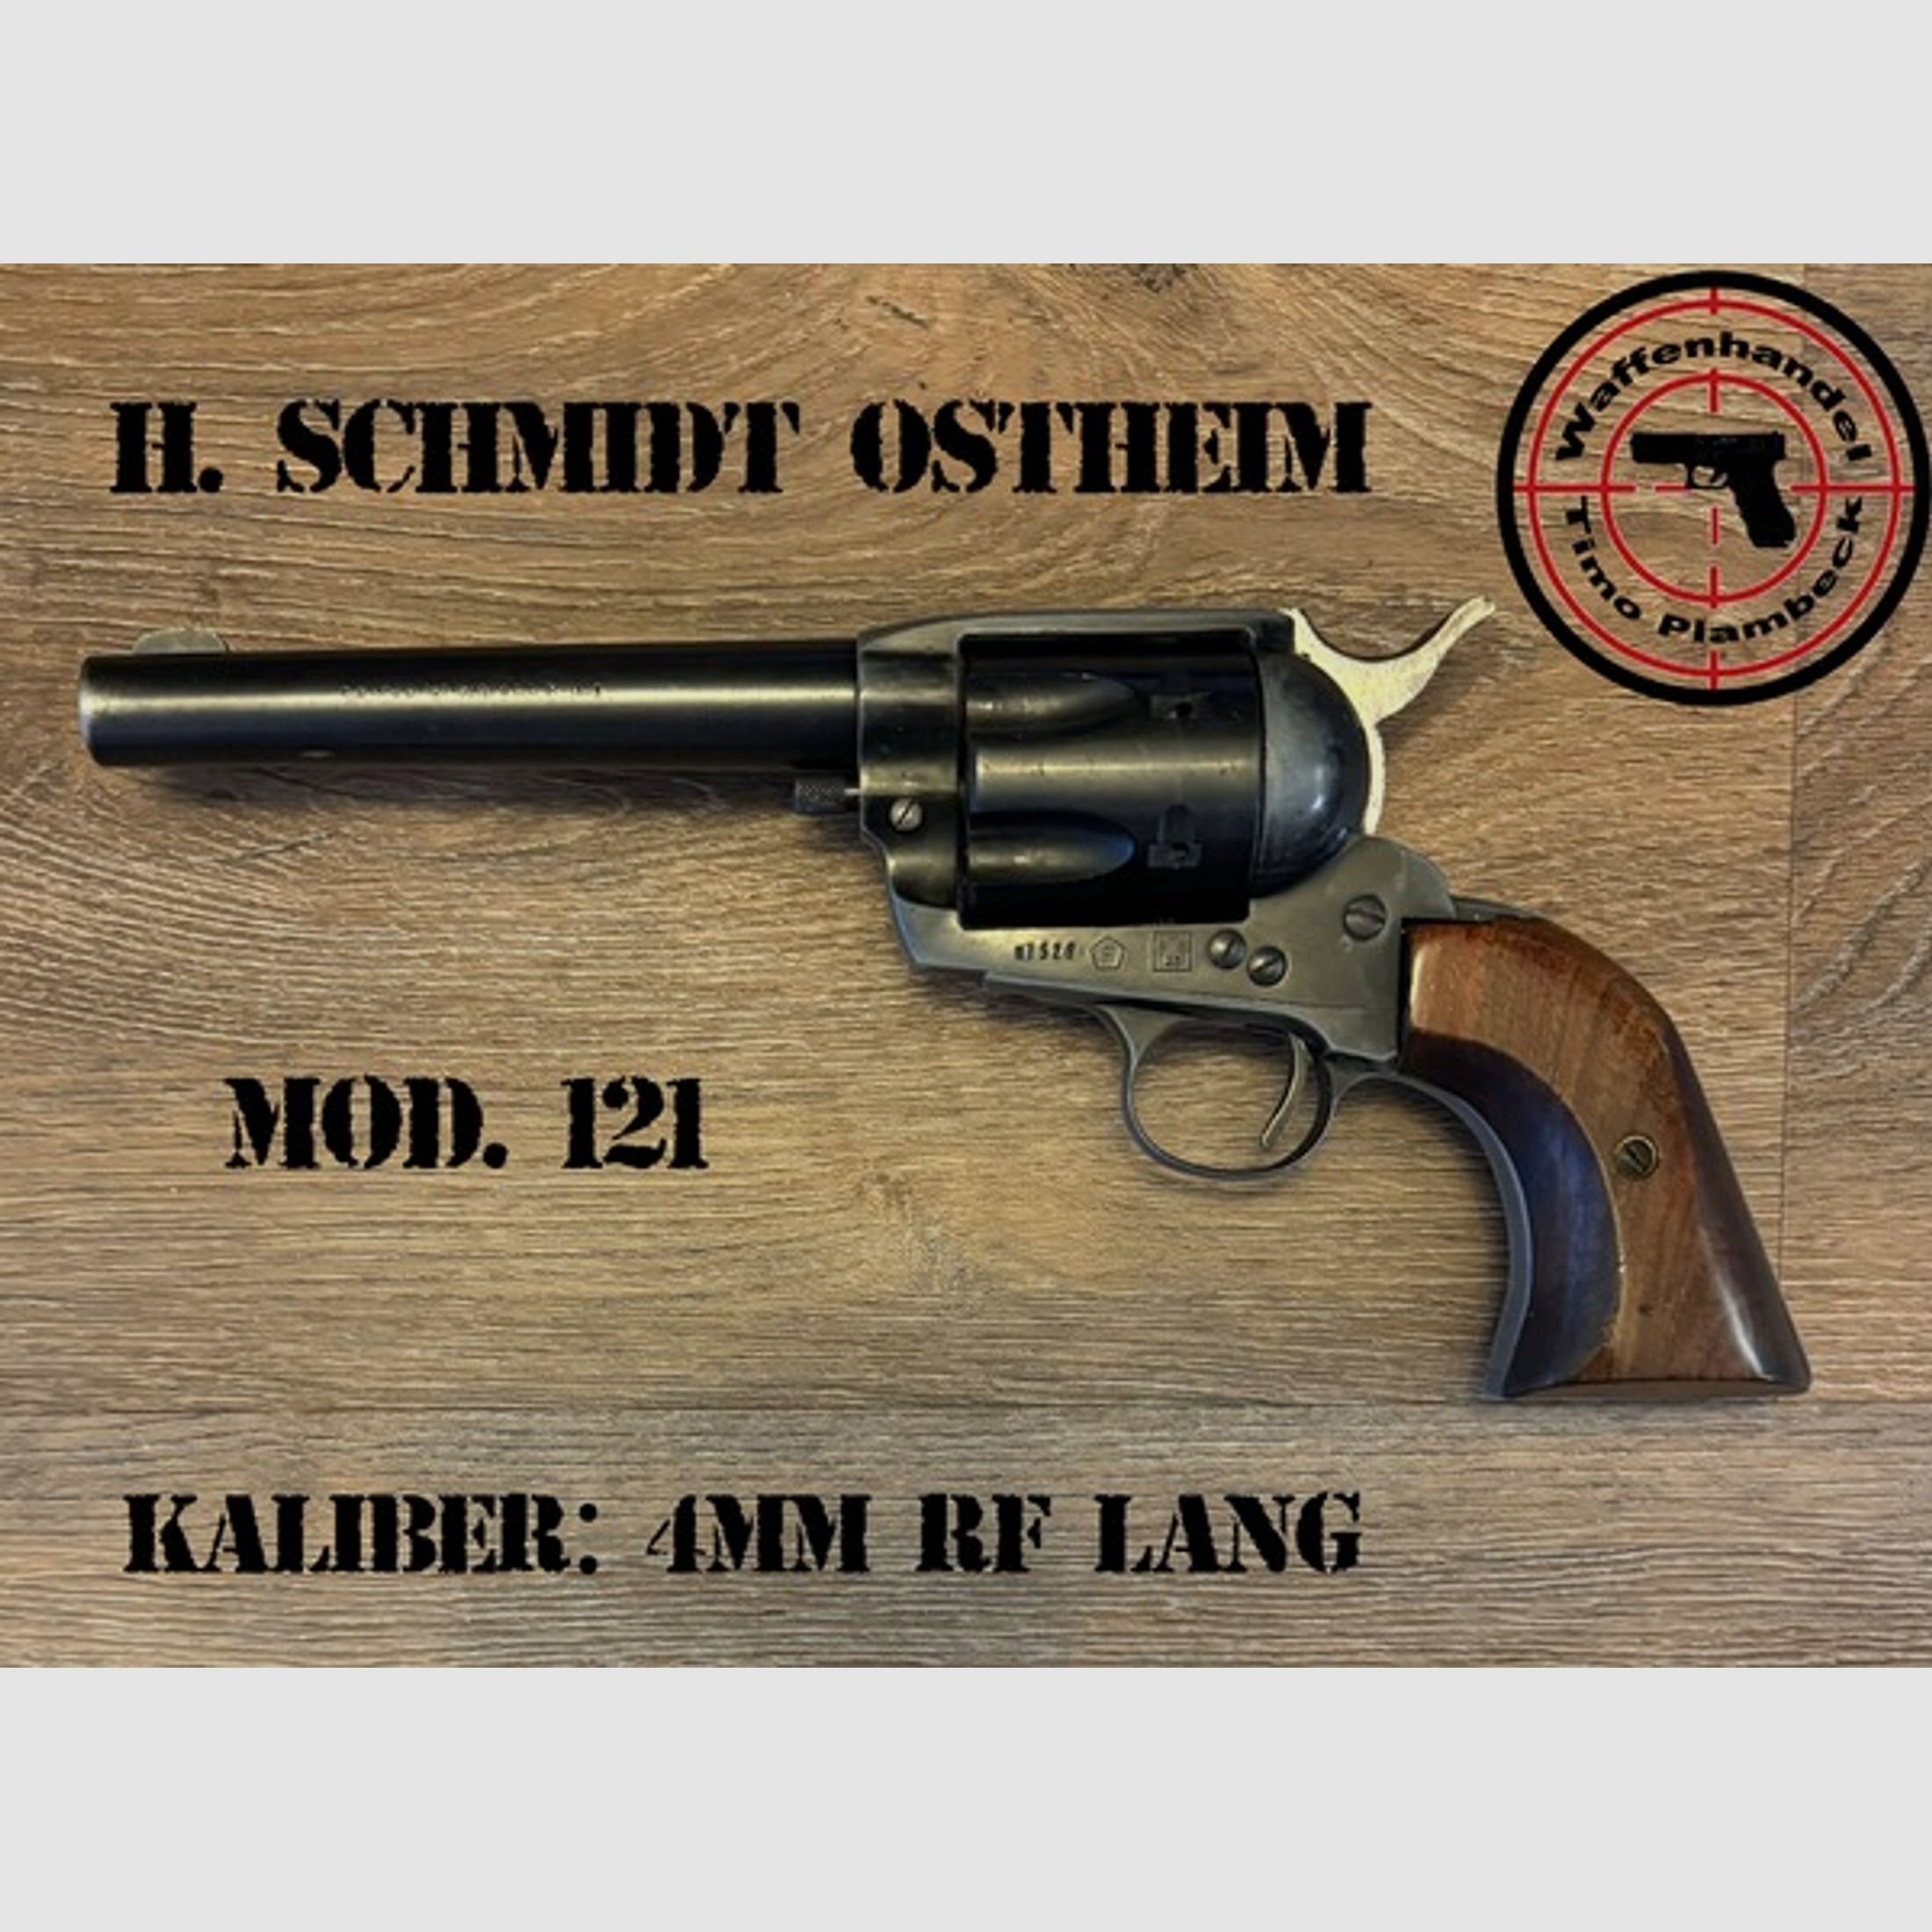 Revolver HS (H. SCHMIDT OSTHEIM)   Mod. 121   im Kaliber 4mmR lang